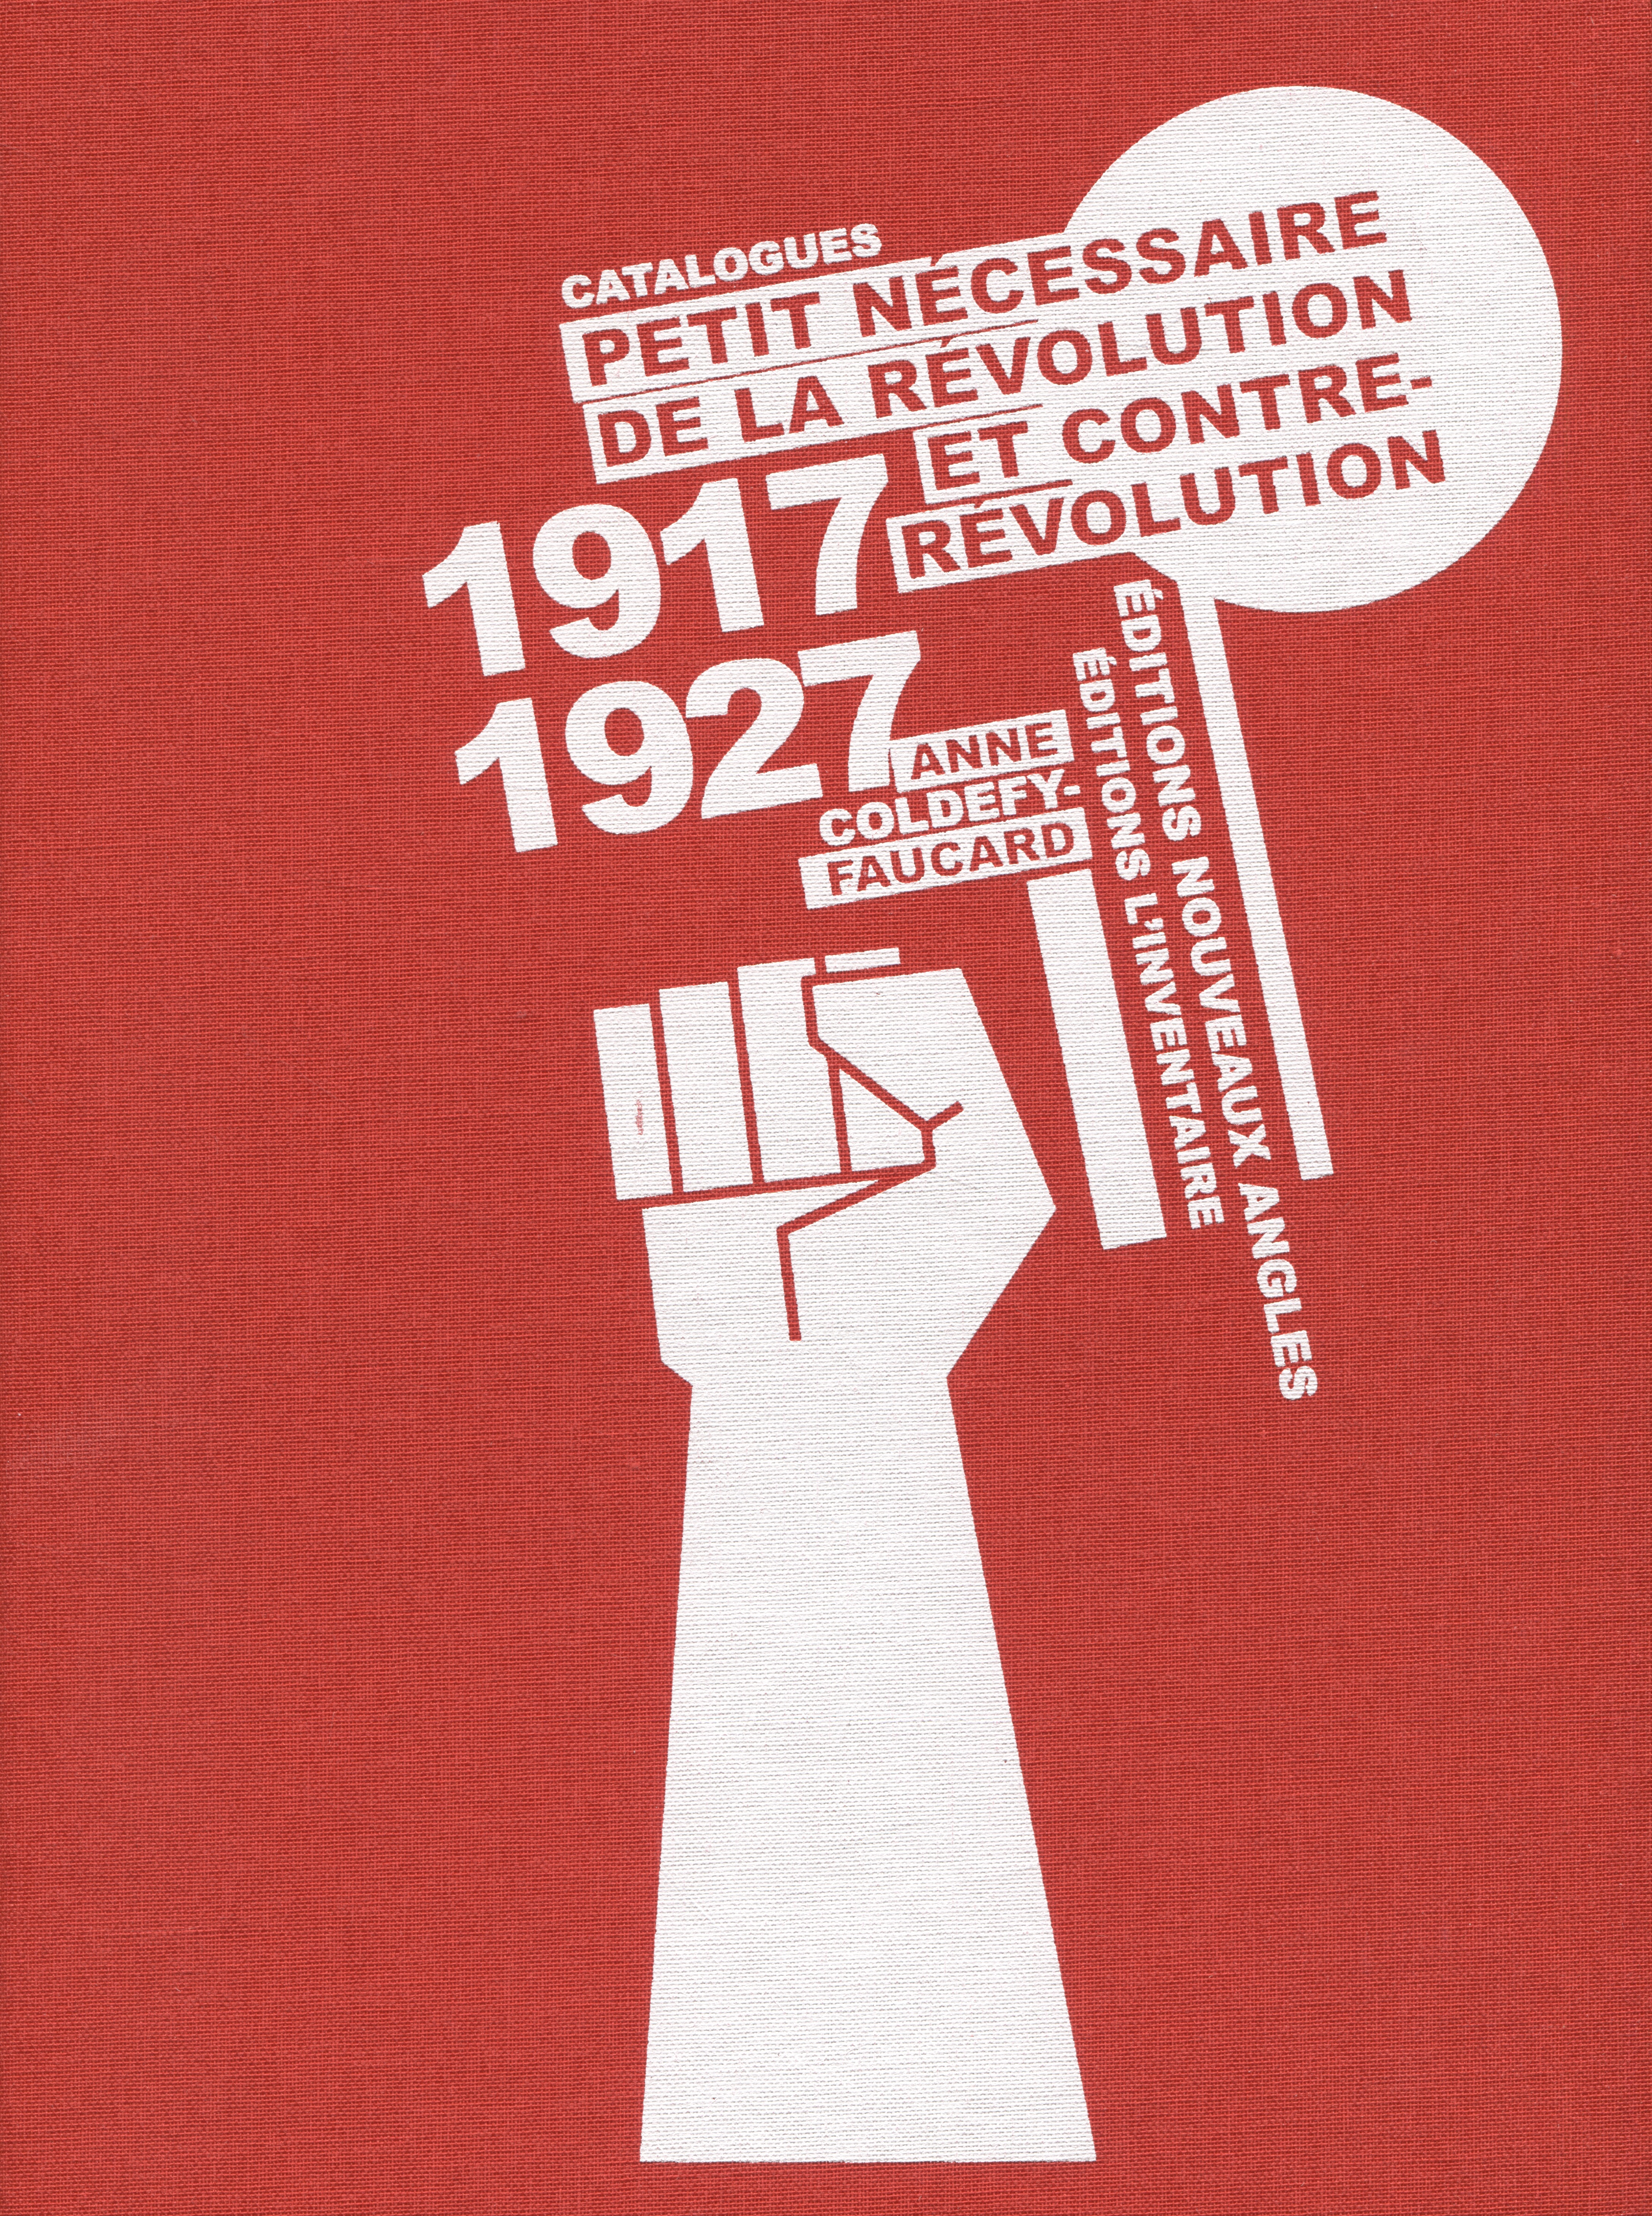 Coldefy-Faucard Anne Petit Necessaire de la revolution et contre-revolution (Catalogue 1917 — 1927)